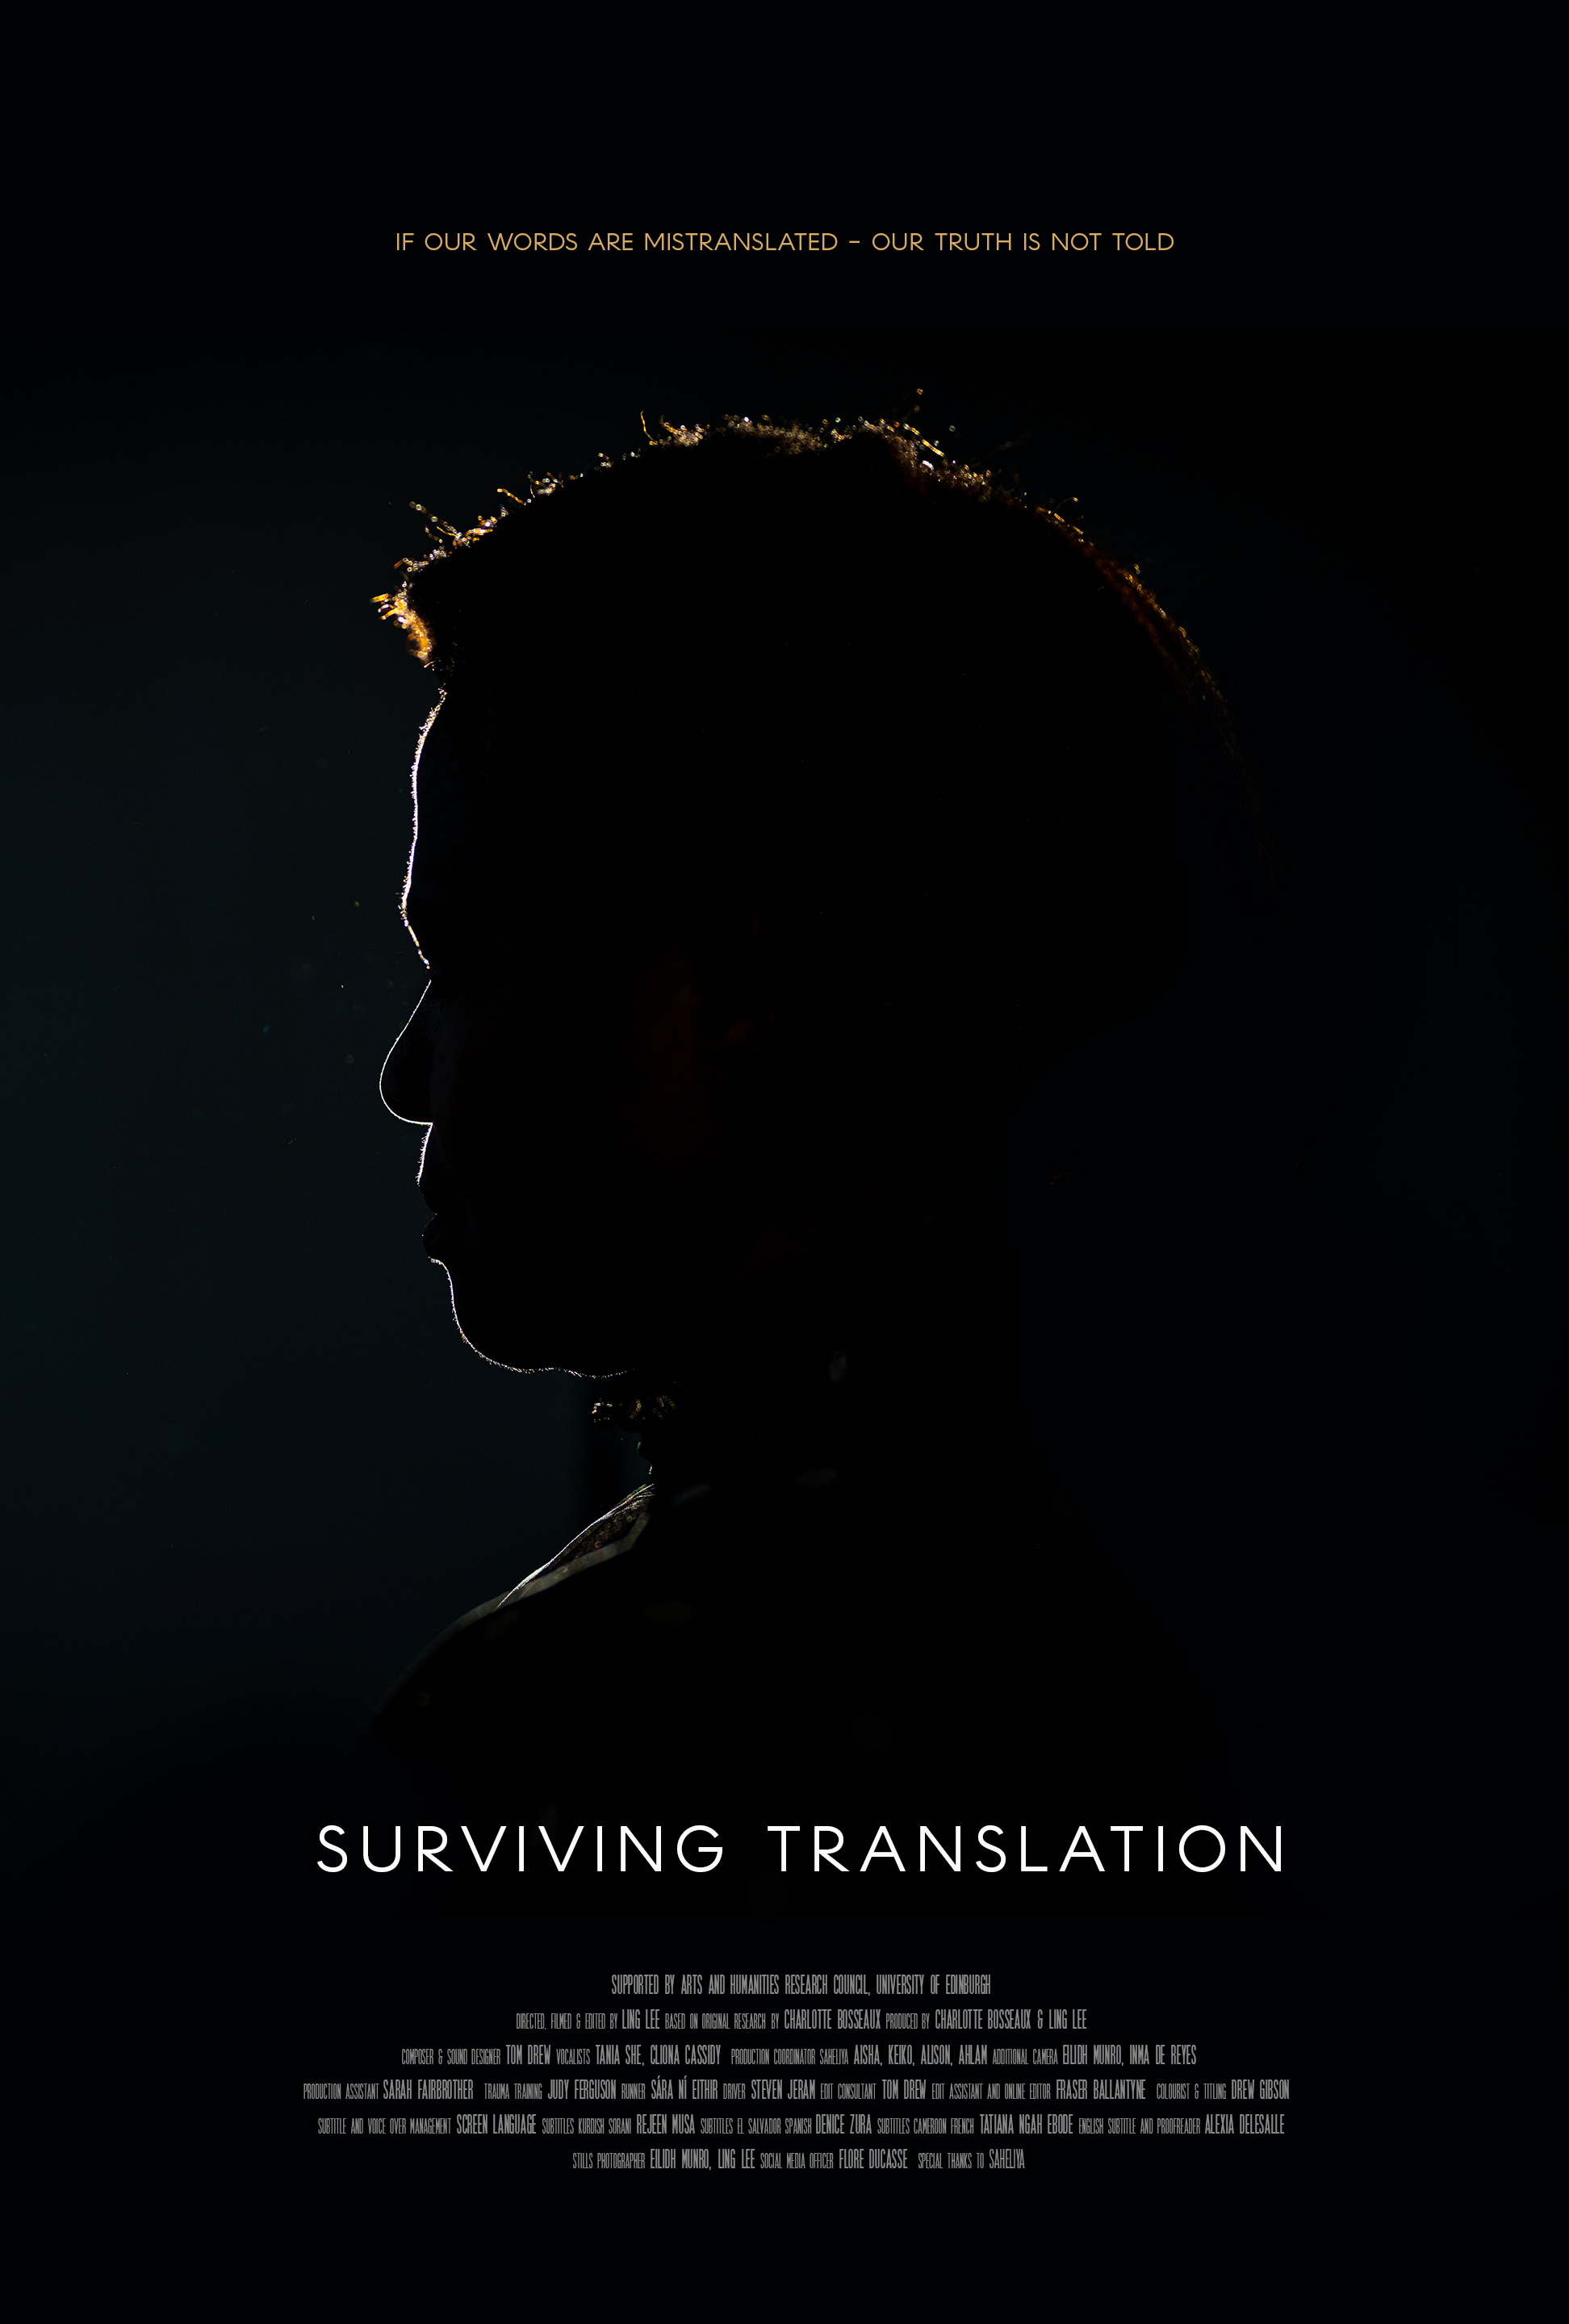 Surviving translation